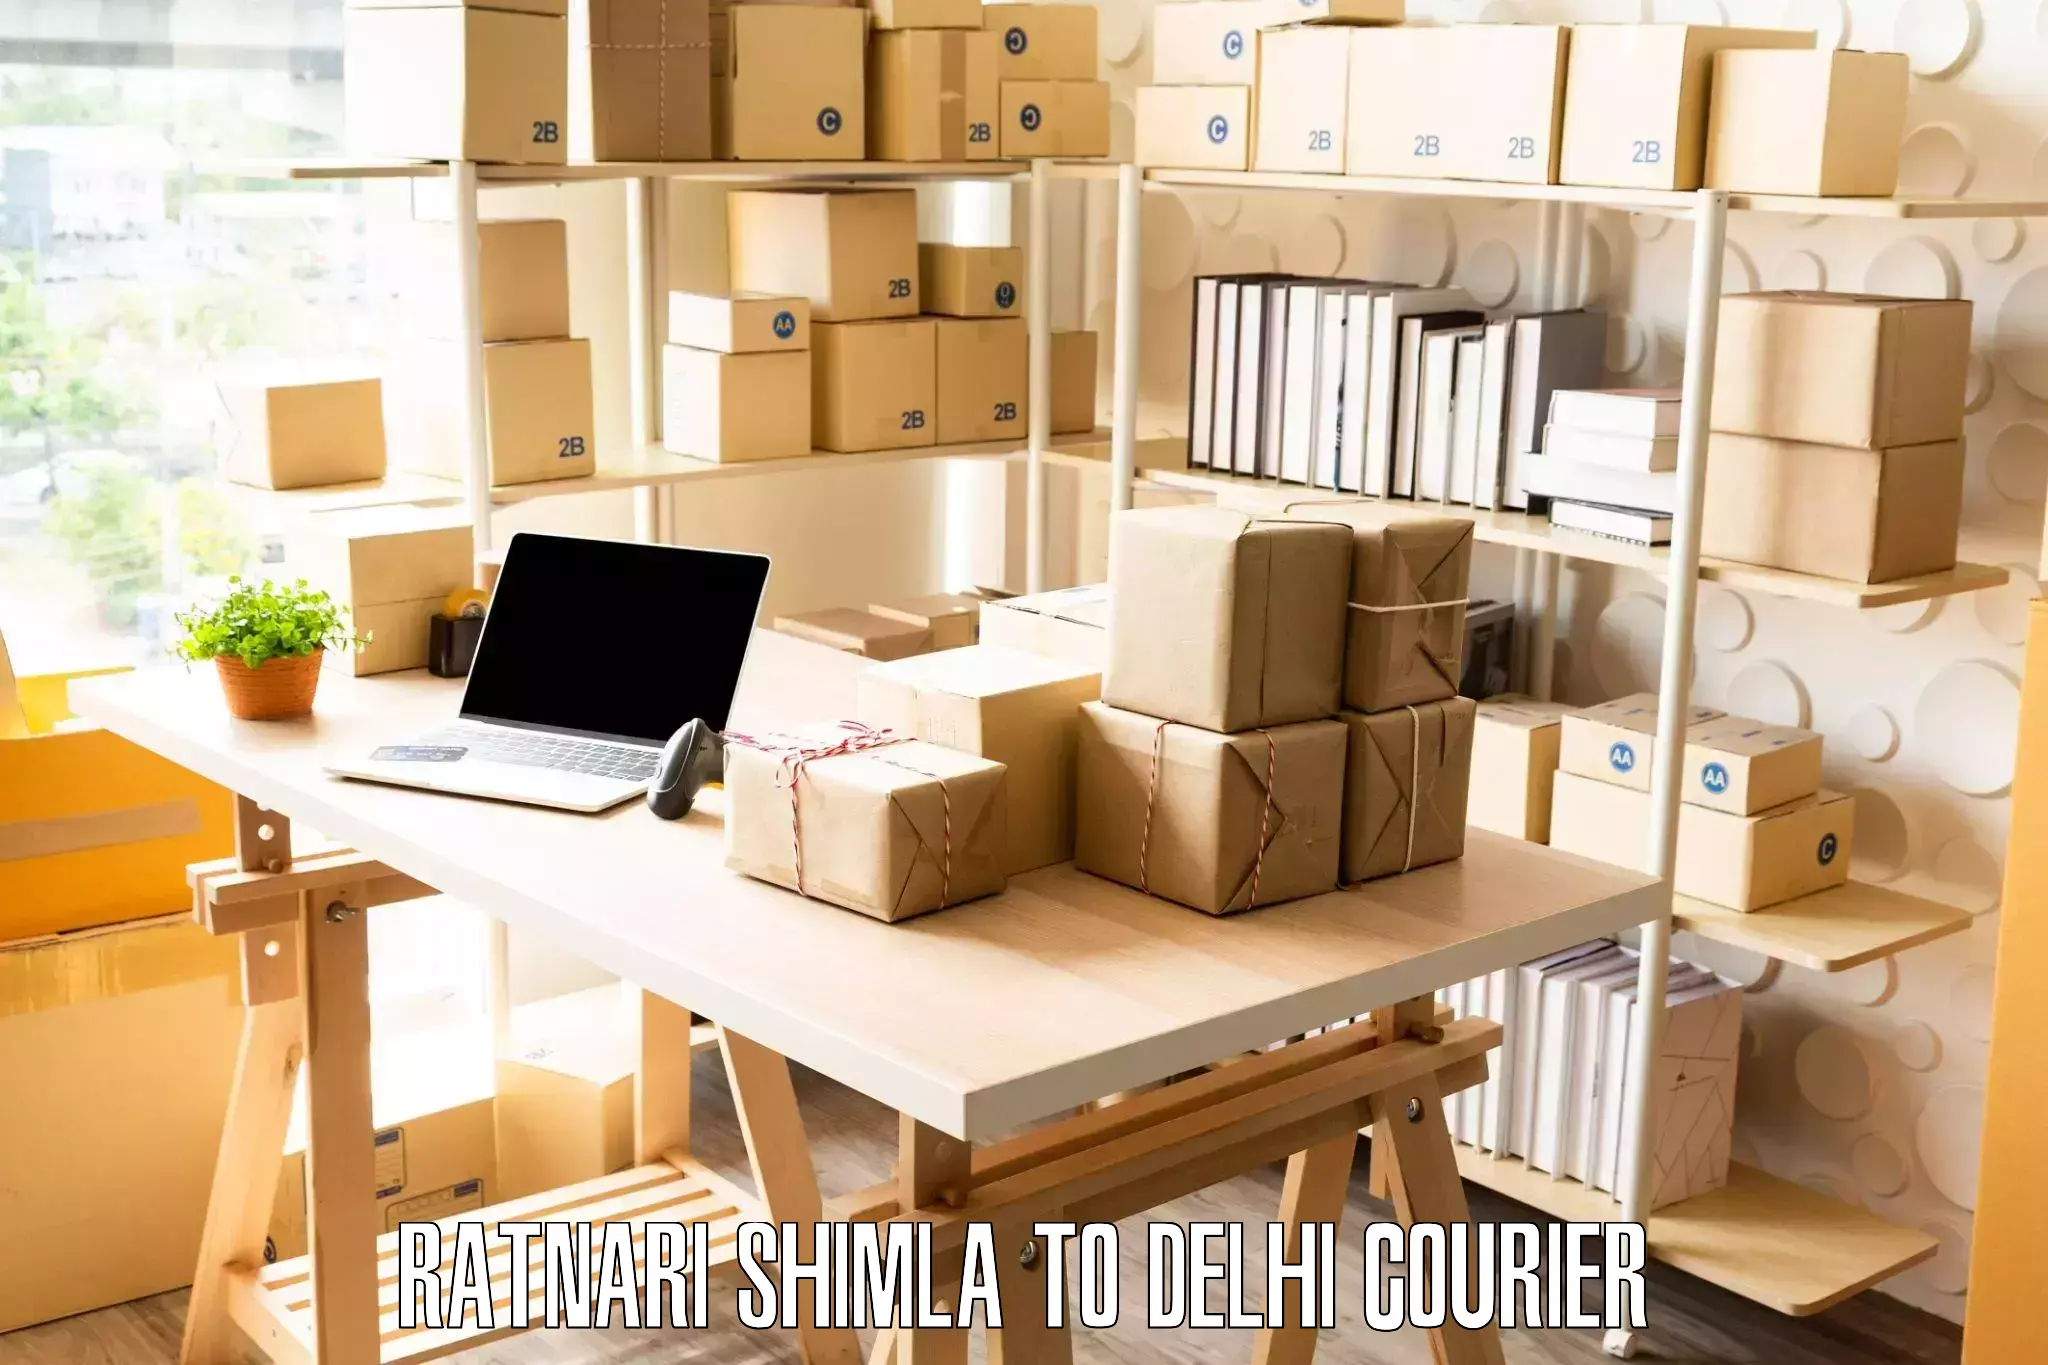 Advanced moving solutions Ratnari Shimla to NIT Delhi